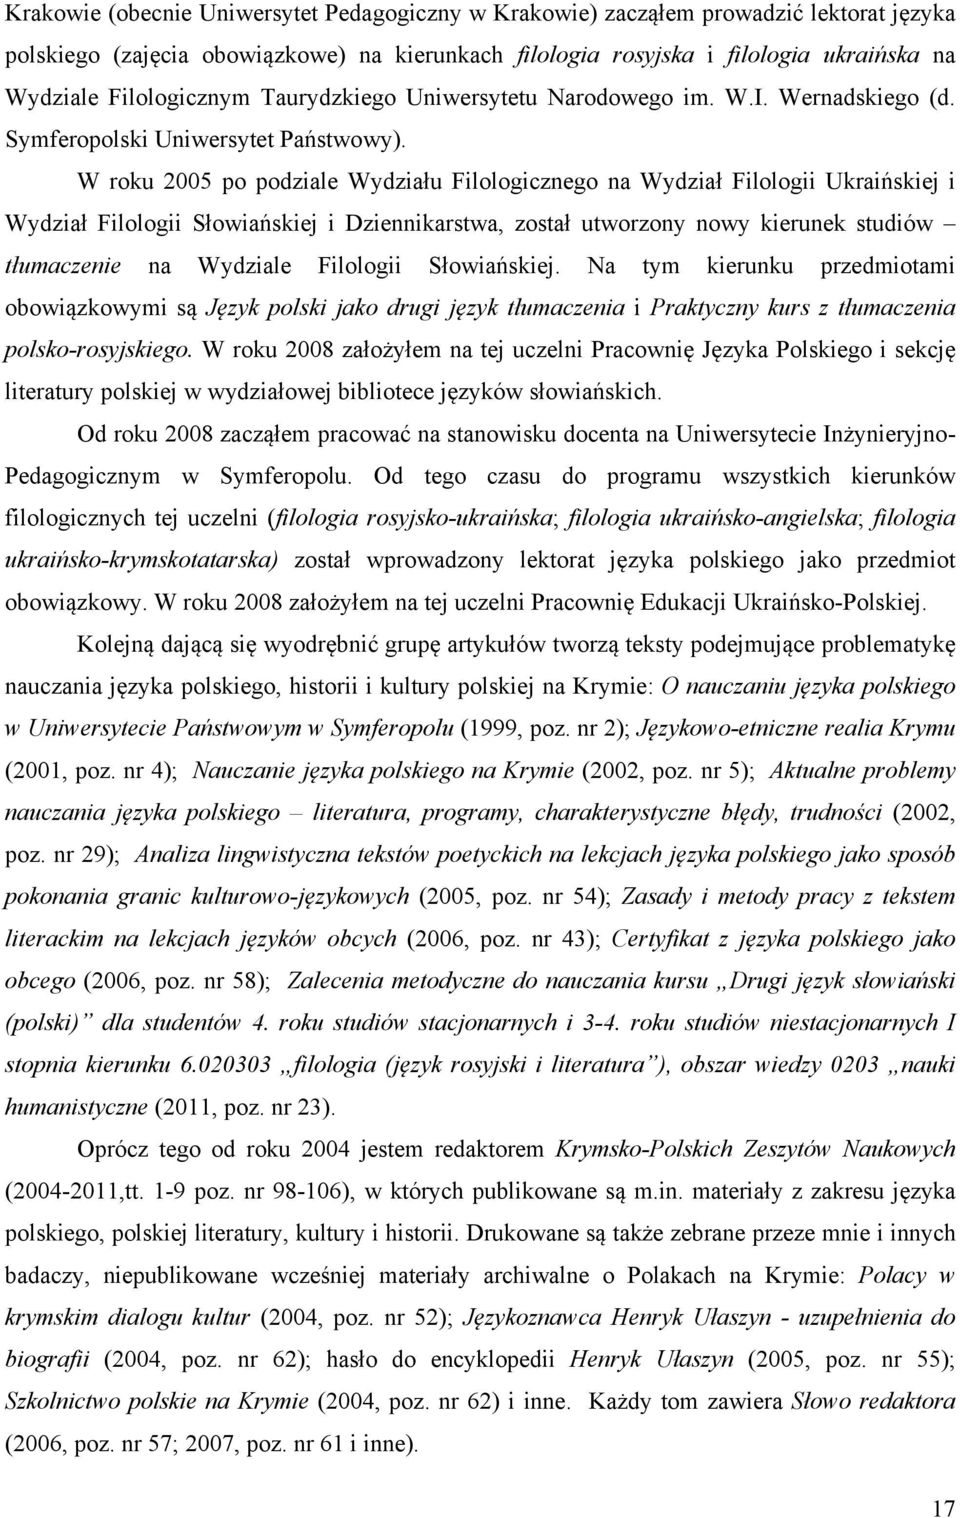 W roku 2005 po podziale Wydziału Filologicznego na Wydział Filologii Ukraińskiej i Wydział Filologii Słowiańskiej i Dziennikarstwa, został utworzony nowy kierunek studiów tłumaczenie na Wydziale